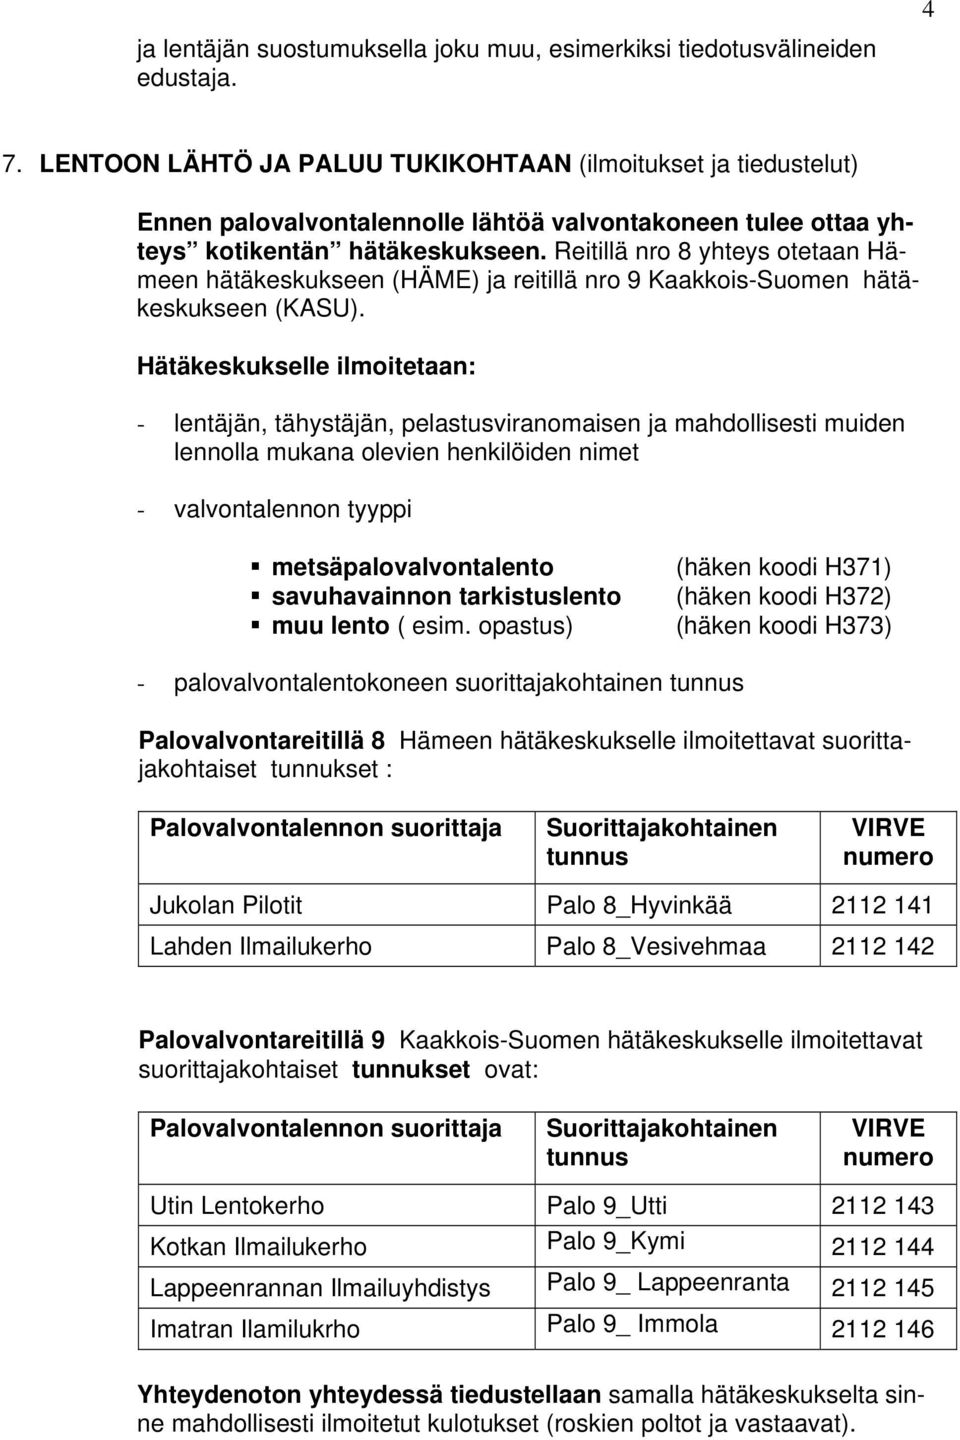 Reitillä nro 8 yhteys otetaan Hämeen hätäkeskukseen (HÄME) ja reitillä nro 9 Kaakkois-Suomen hätäkeskukseen (KASU).